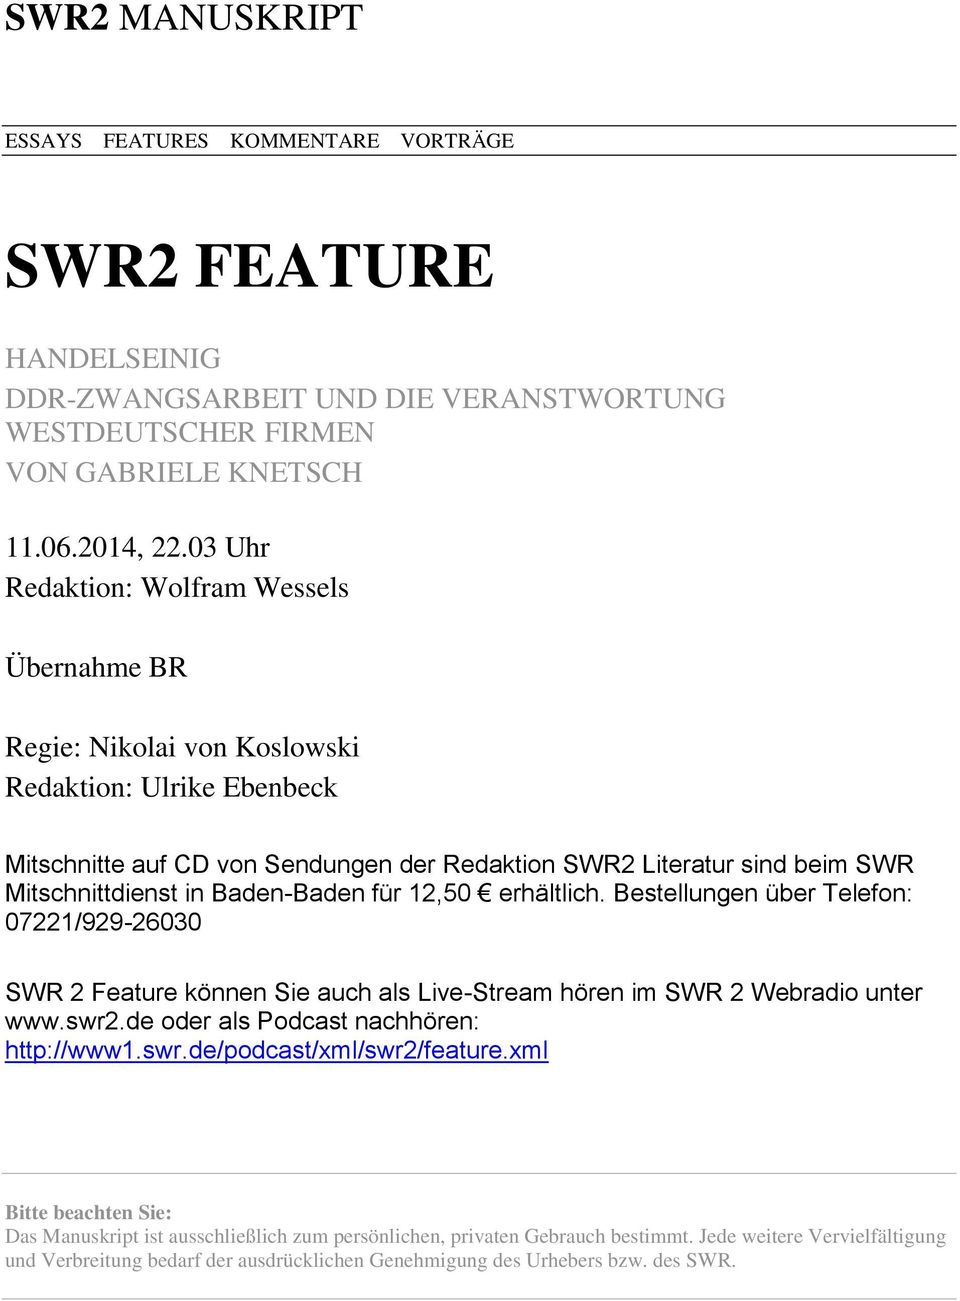 Baden-Baden für 12,50 erhältlich. Bestellungen über Telefon: 07221/929-26030 SWR 2 Feature können Sie auch als Live-Stream hören im SWR 2 Webradio unter www.swr2.